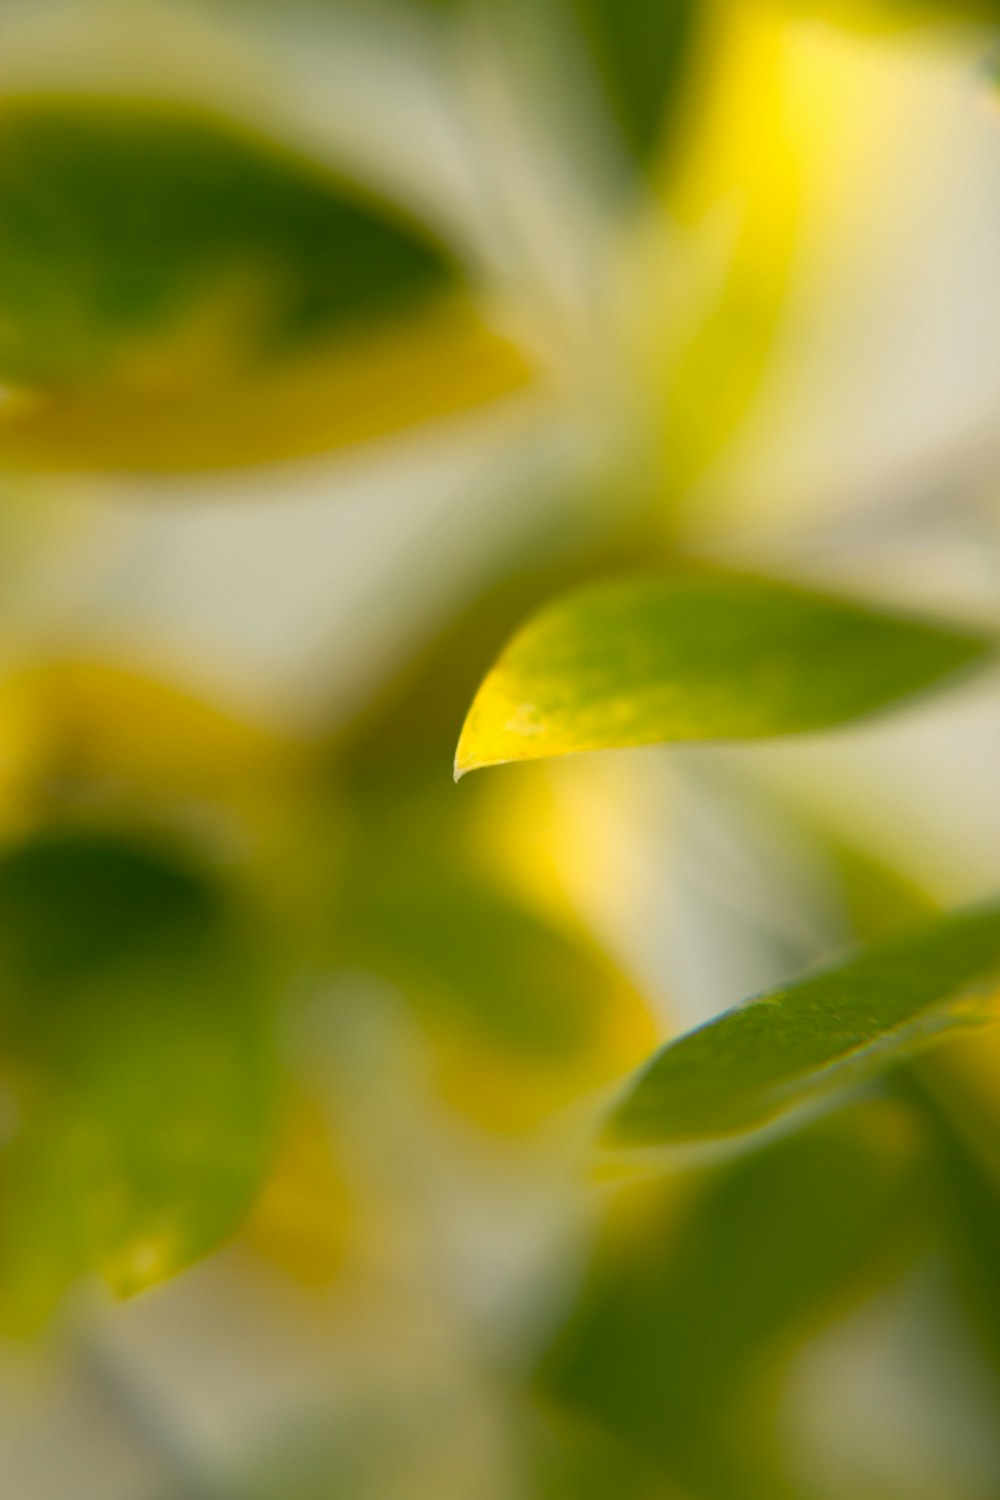 Hình ảnh thực vật lá xanh trên nền DSLR miễn phí sẽ khiến bạn khám phá ra những chi tiết tuyệt vời nhất của thiên nhiên. Hãy chìm vào thế giới tuyệt đẹp của những chi tiết nhỏ bé và cảm nhận được sự sống động của cây cối.